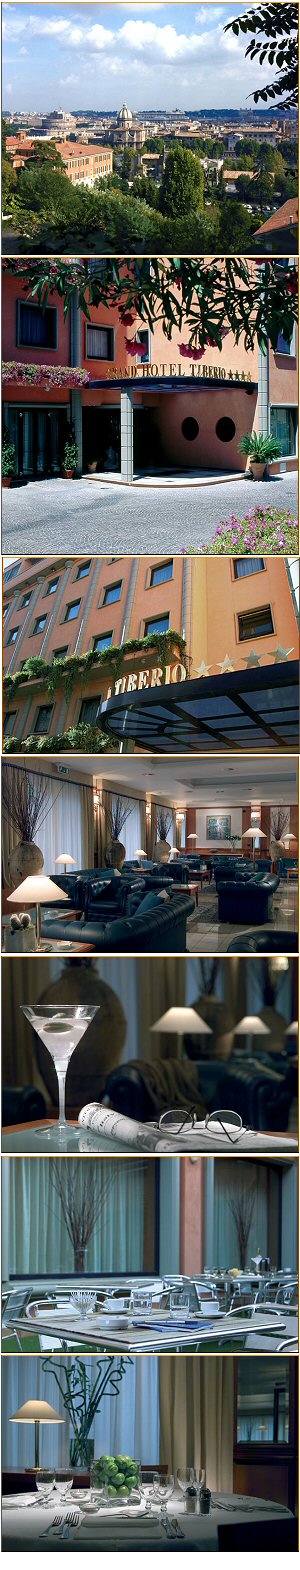 Grand Hotel Tiberio Hotel Roma